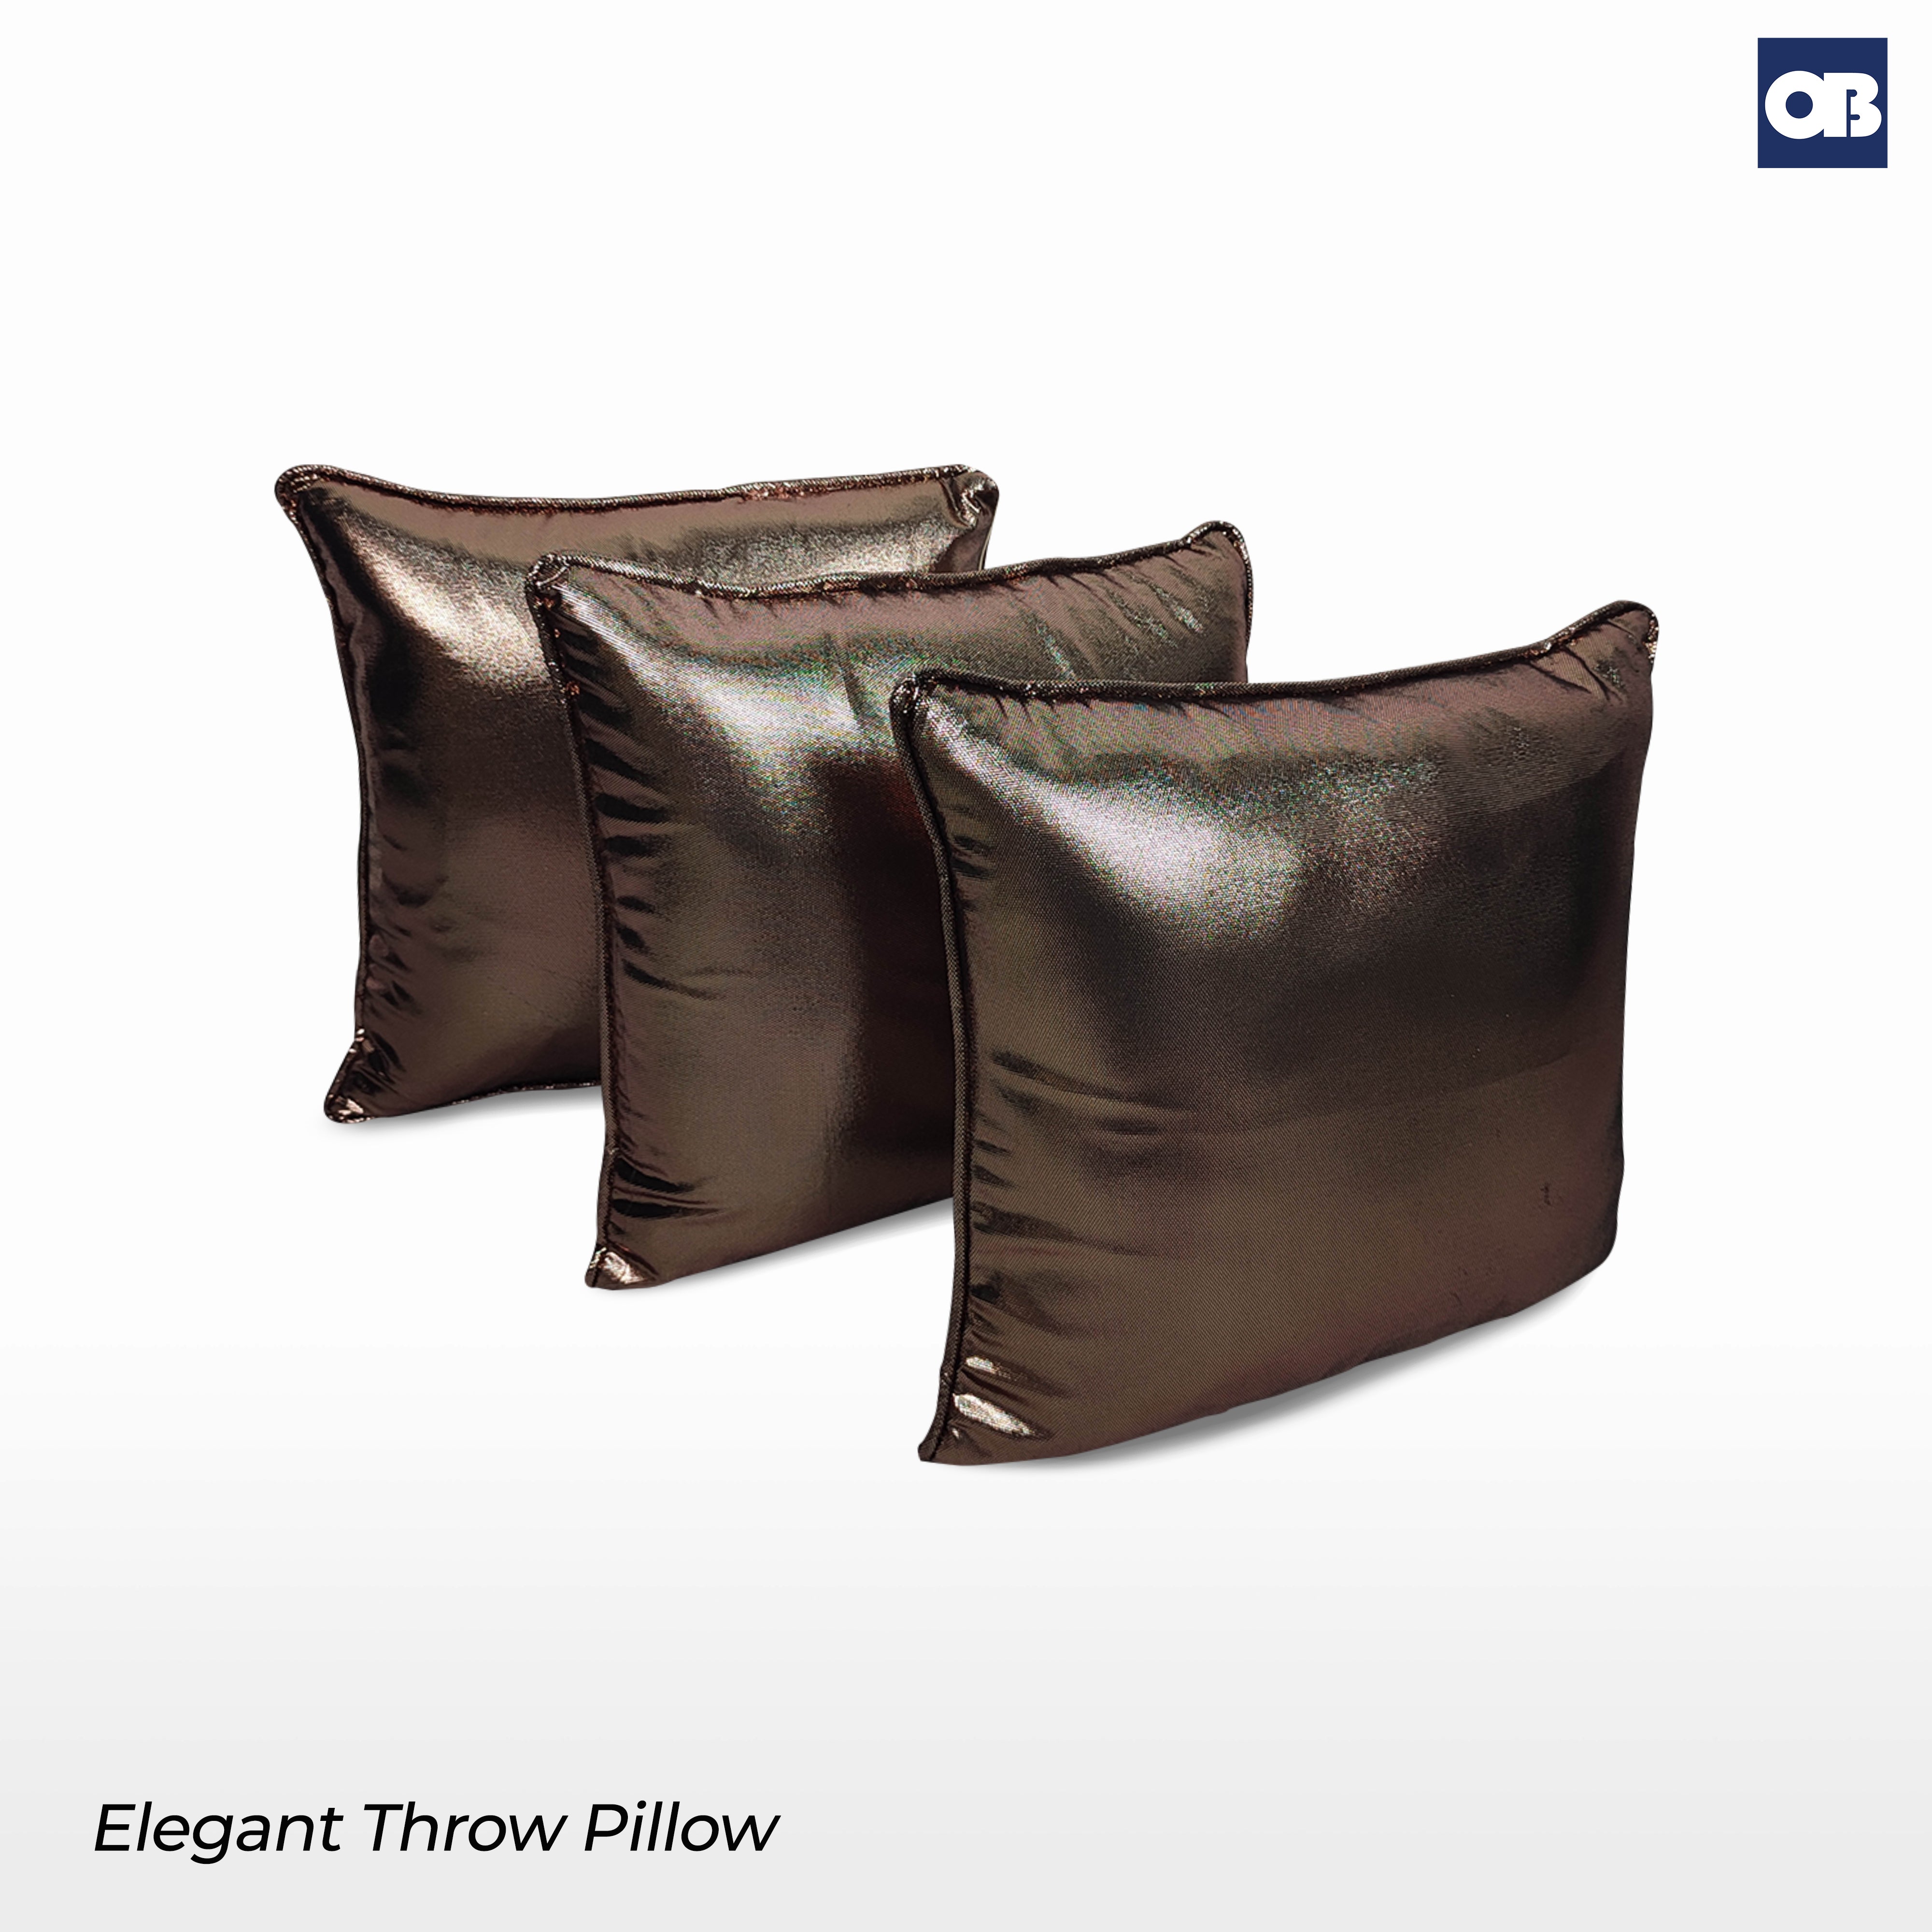 OB Elegant Throw Pillow